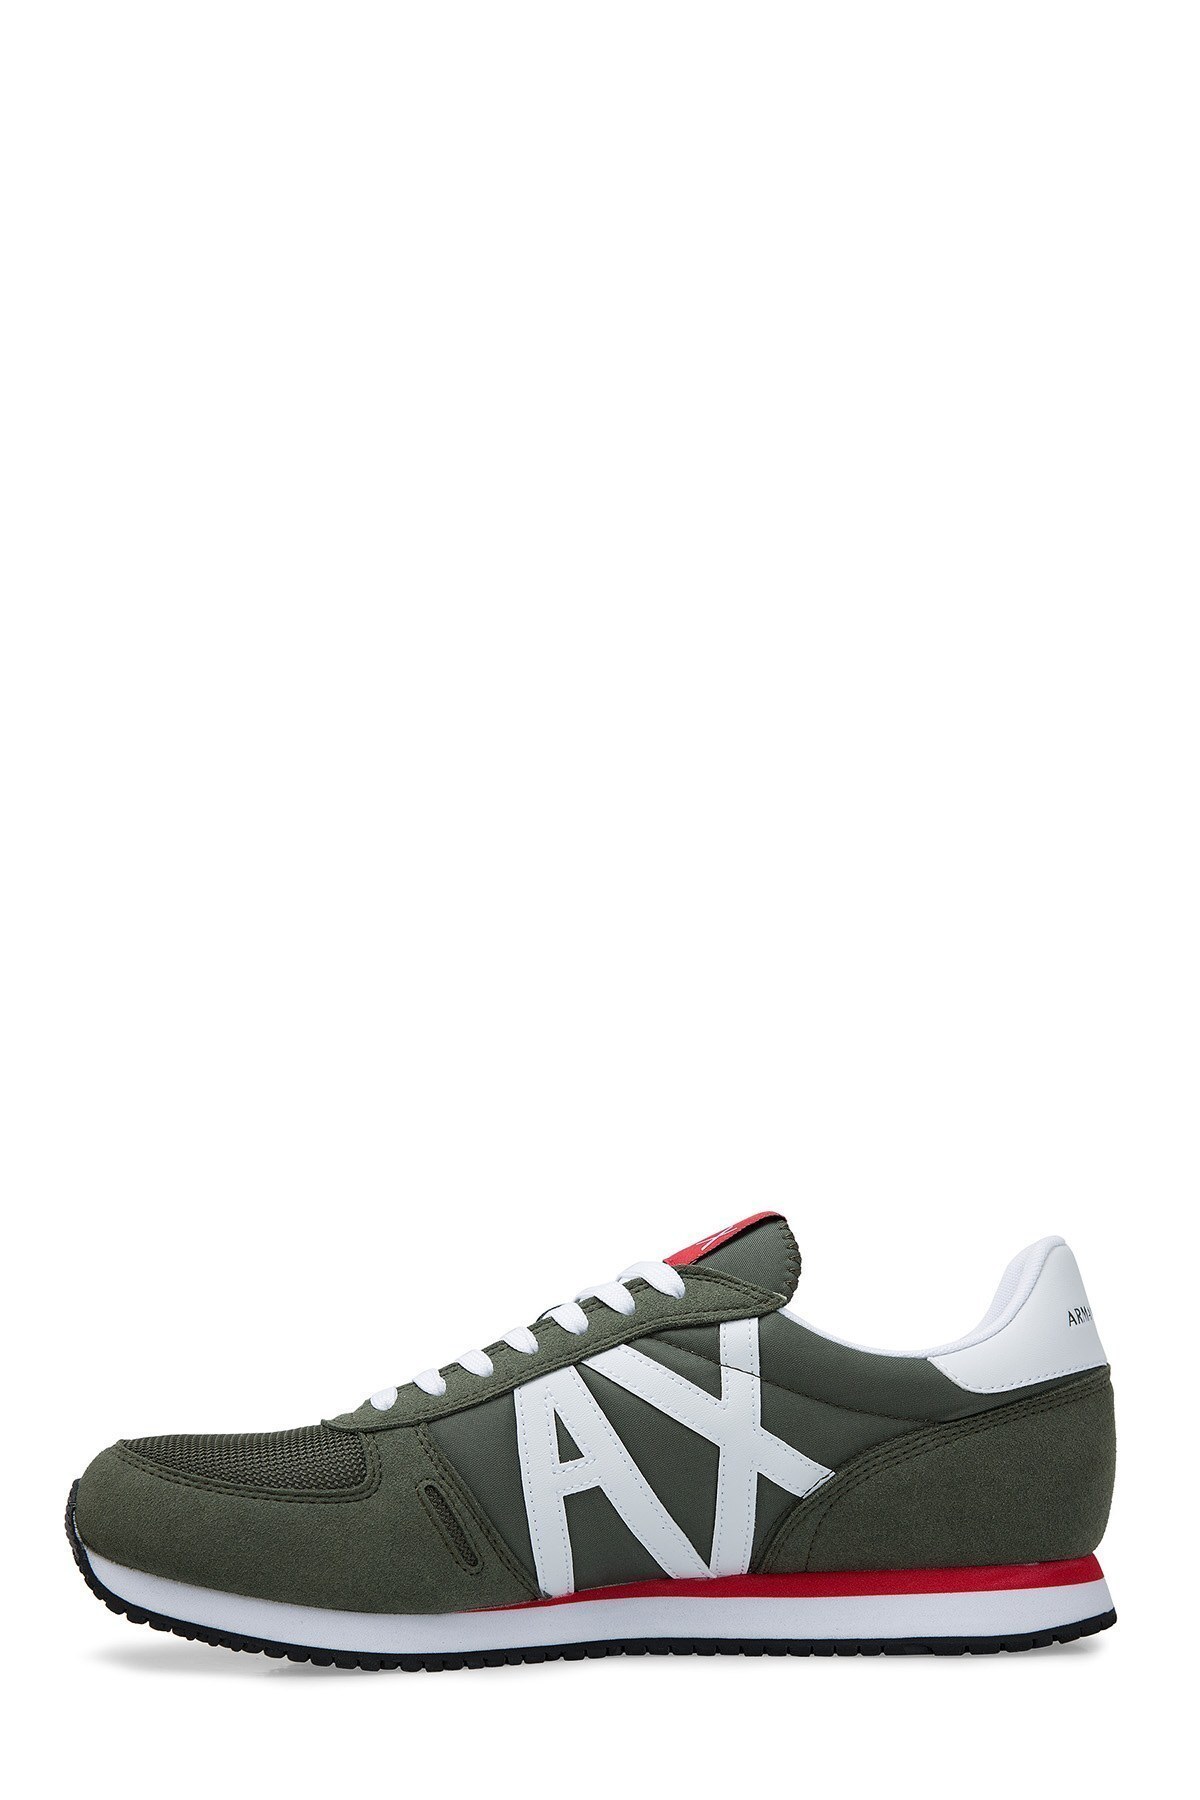 Armani Exchange Erkek Ayakkabı XUX017 XV028 K494 HAKİ